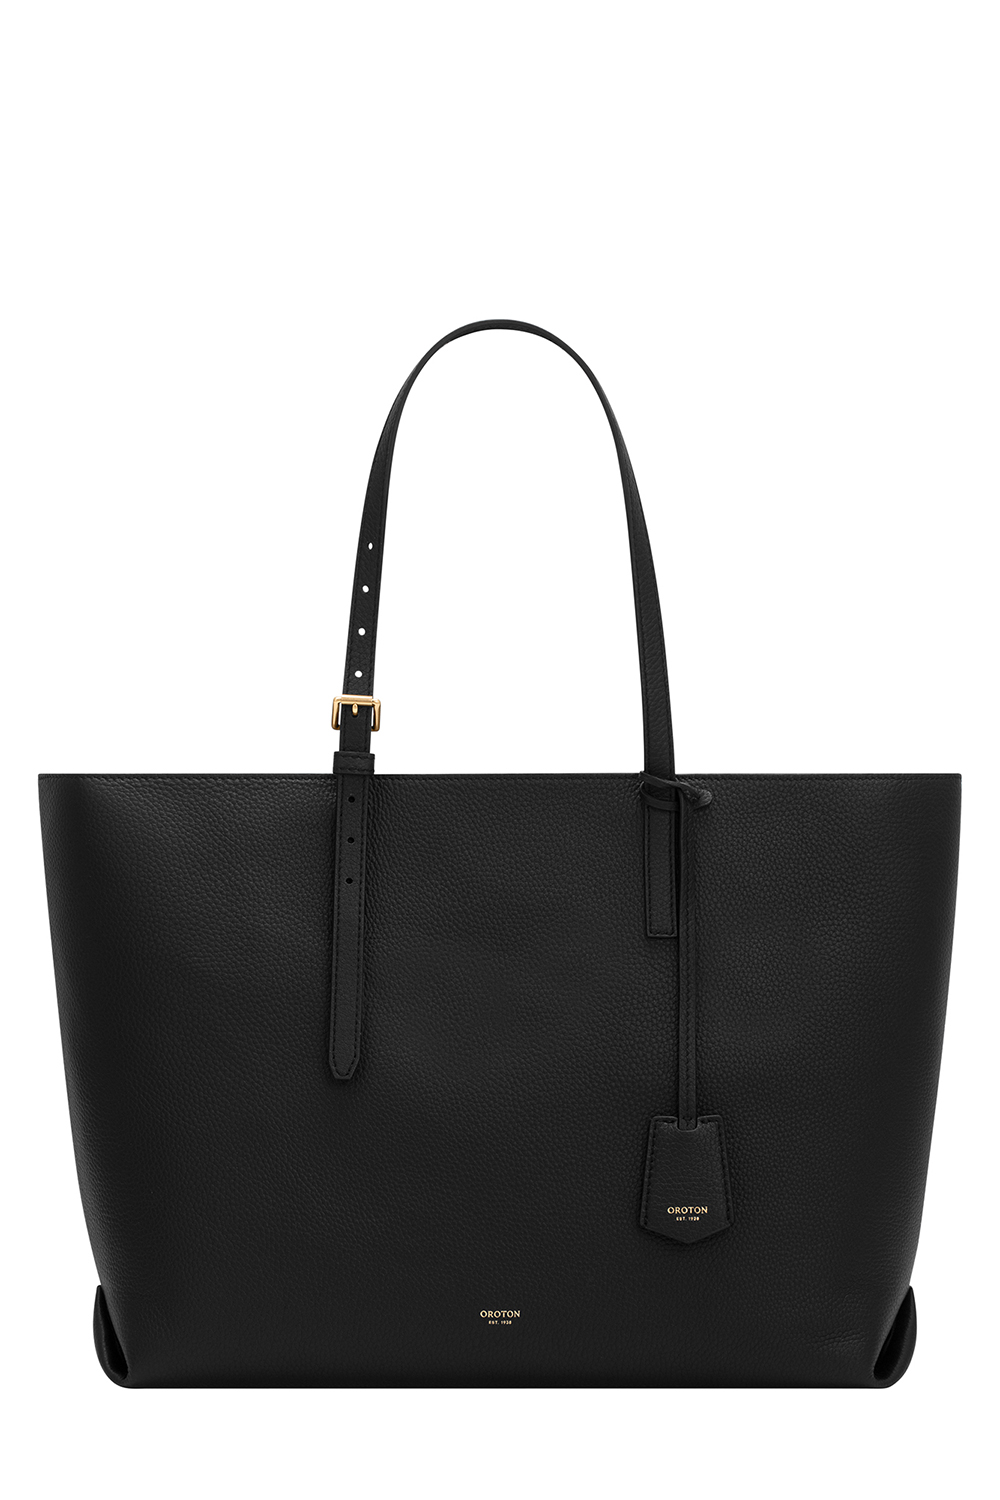 Margot Black Leather Crossbody Bag - Etsy India